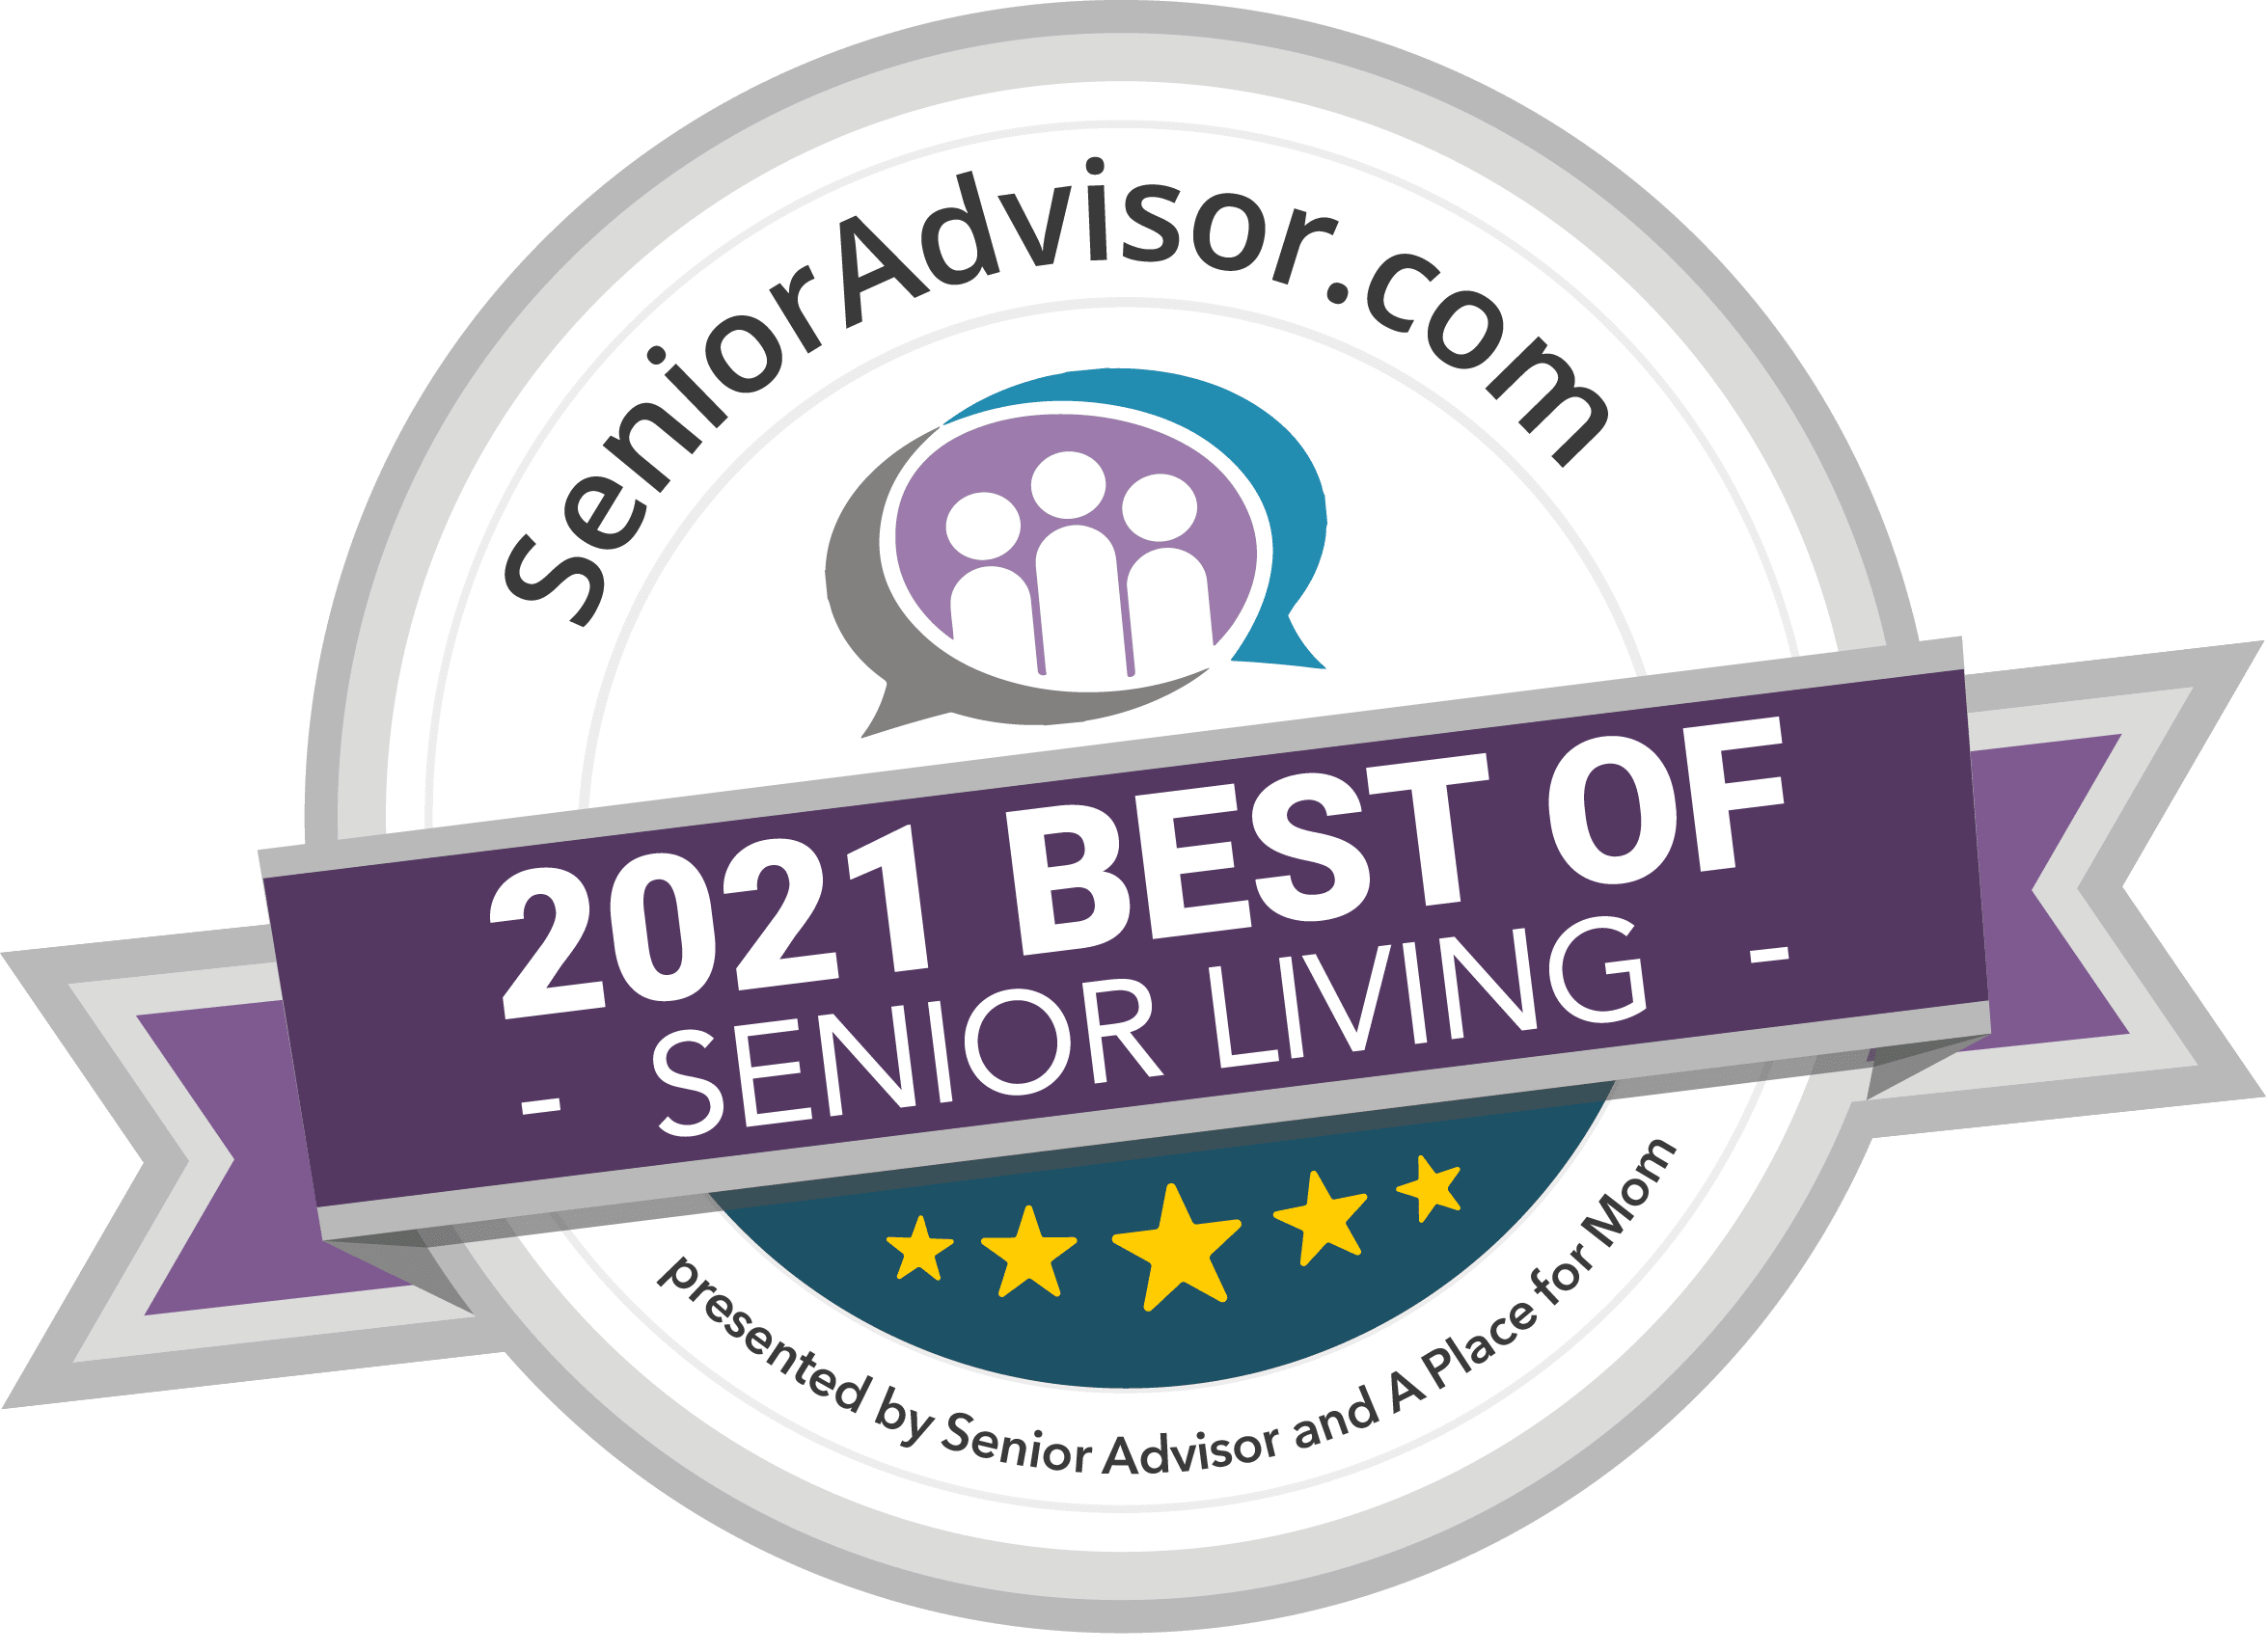 senioradvisor.com 2020 best of senior living